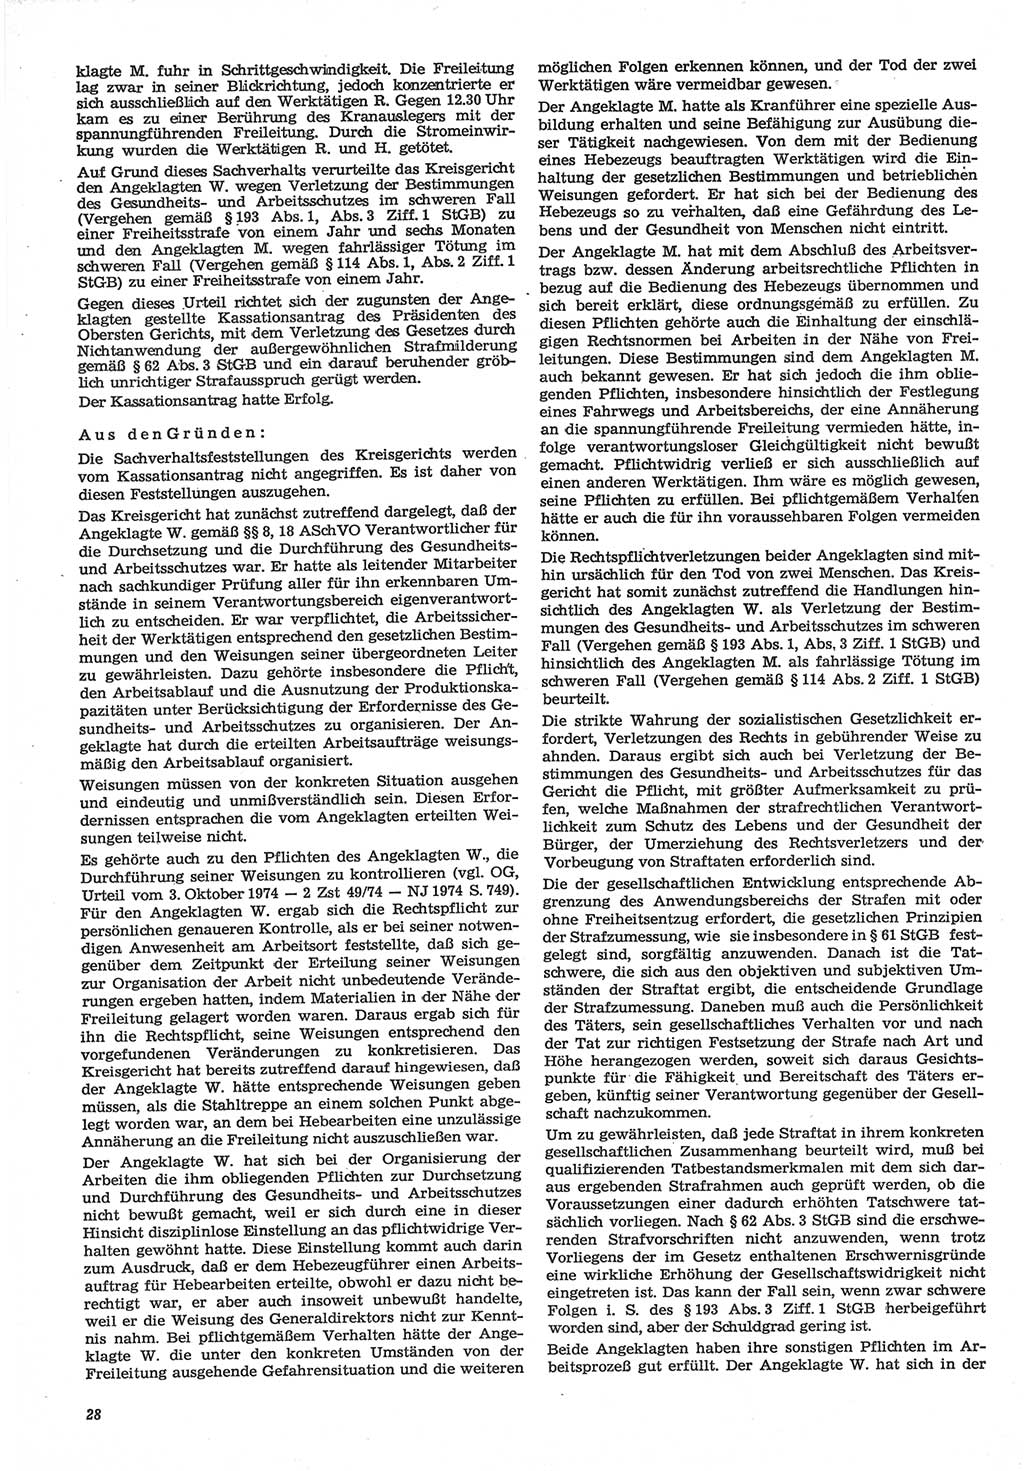 Neue Justiz (NJ), Zeitschrift für Recht und Rechtswissenschaft-Zeitschrift, sozialistisches Recht und Gesetzlichkeit, 31. Jahrgang 1977, Seite 28 (NJ DDR 1977, S. 28)